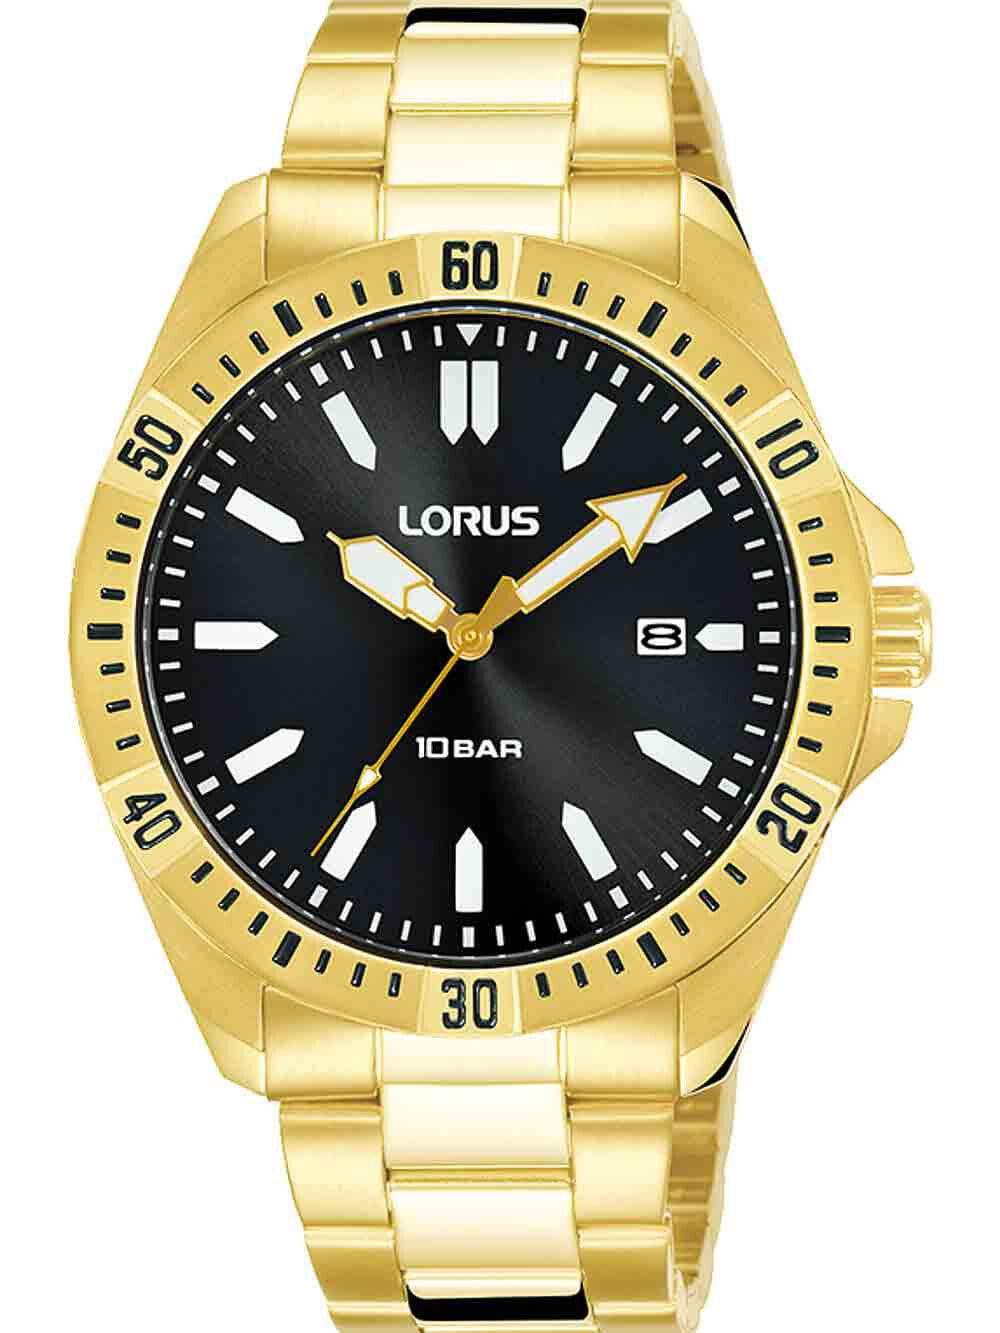 Мужские наручные часы с золотым браслетом Lorus RH918NX9 mens 40mm 10ATM